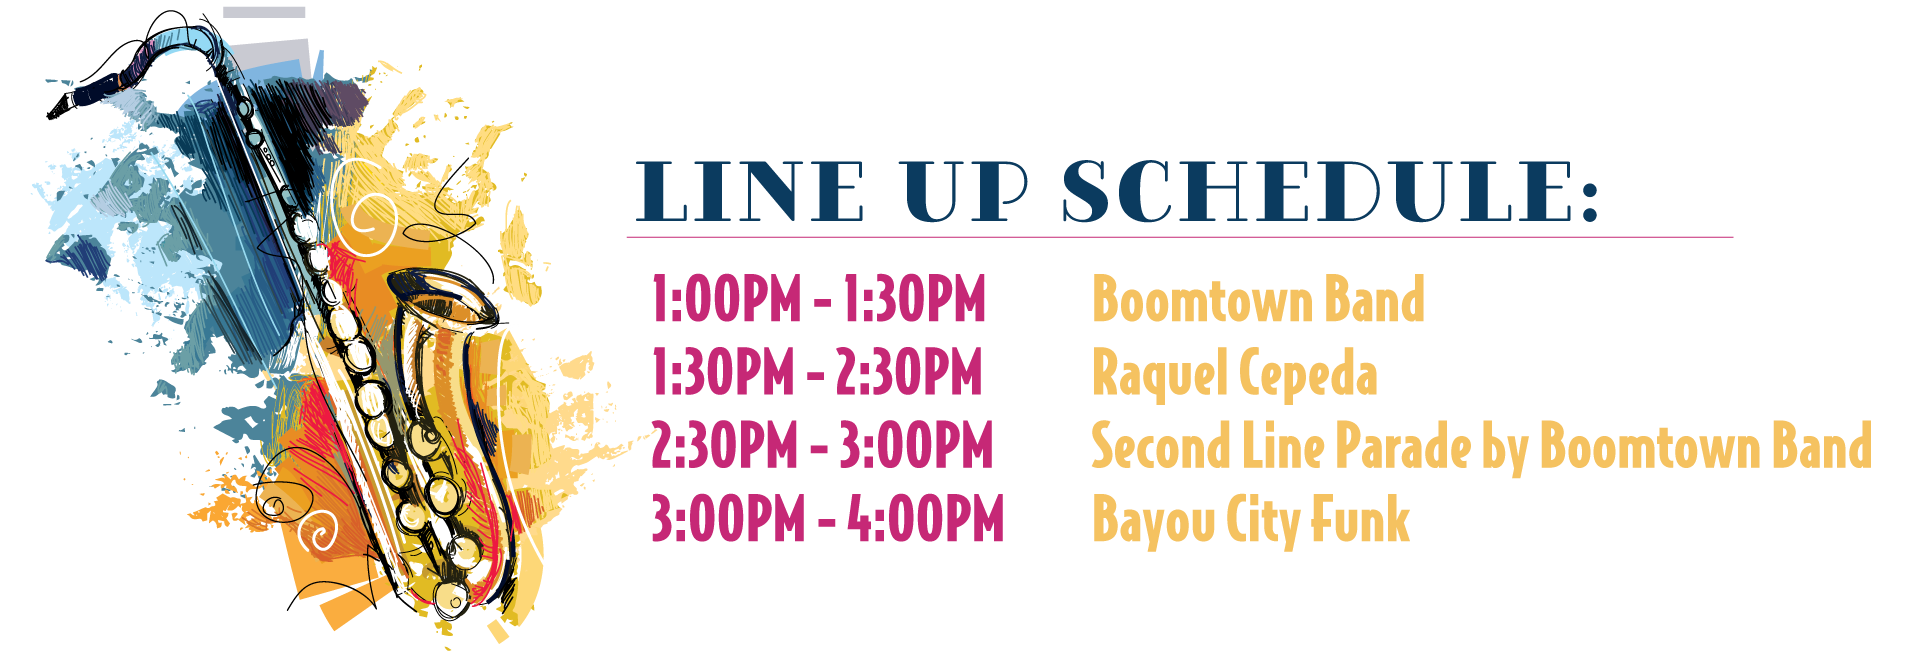 Line up schedule